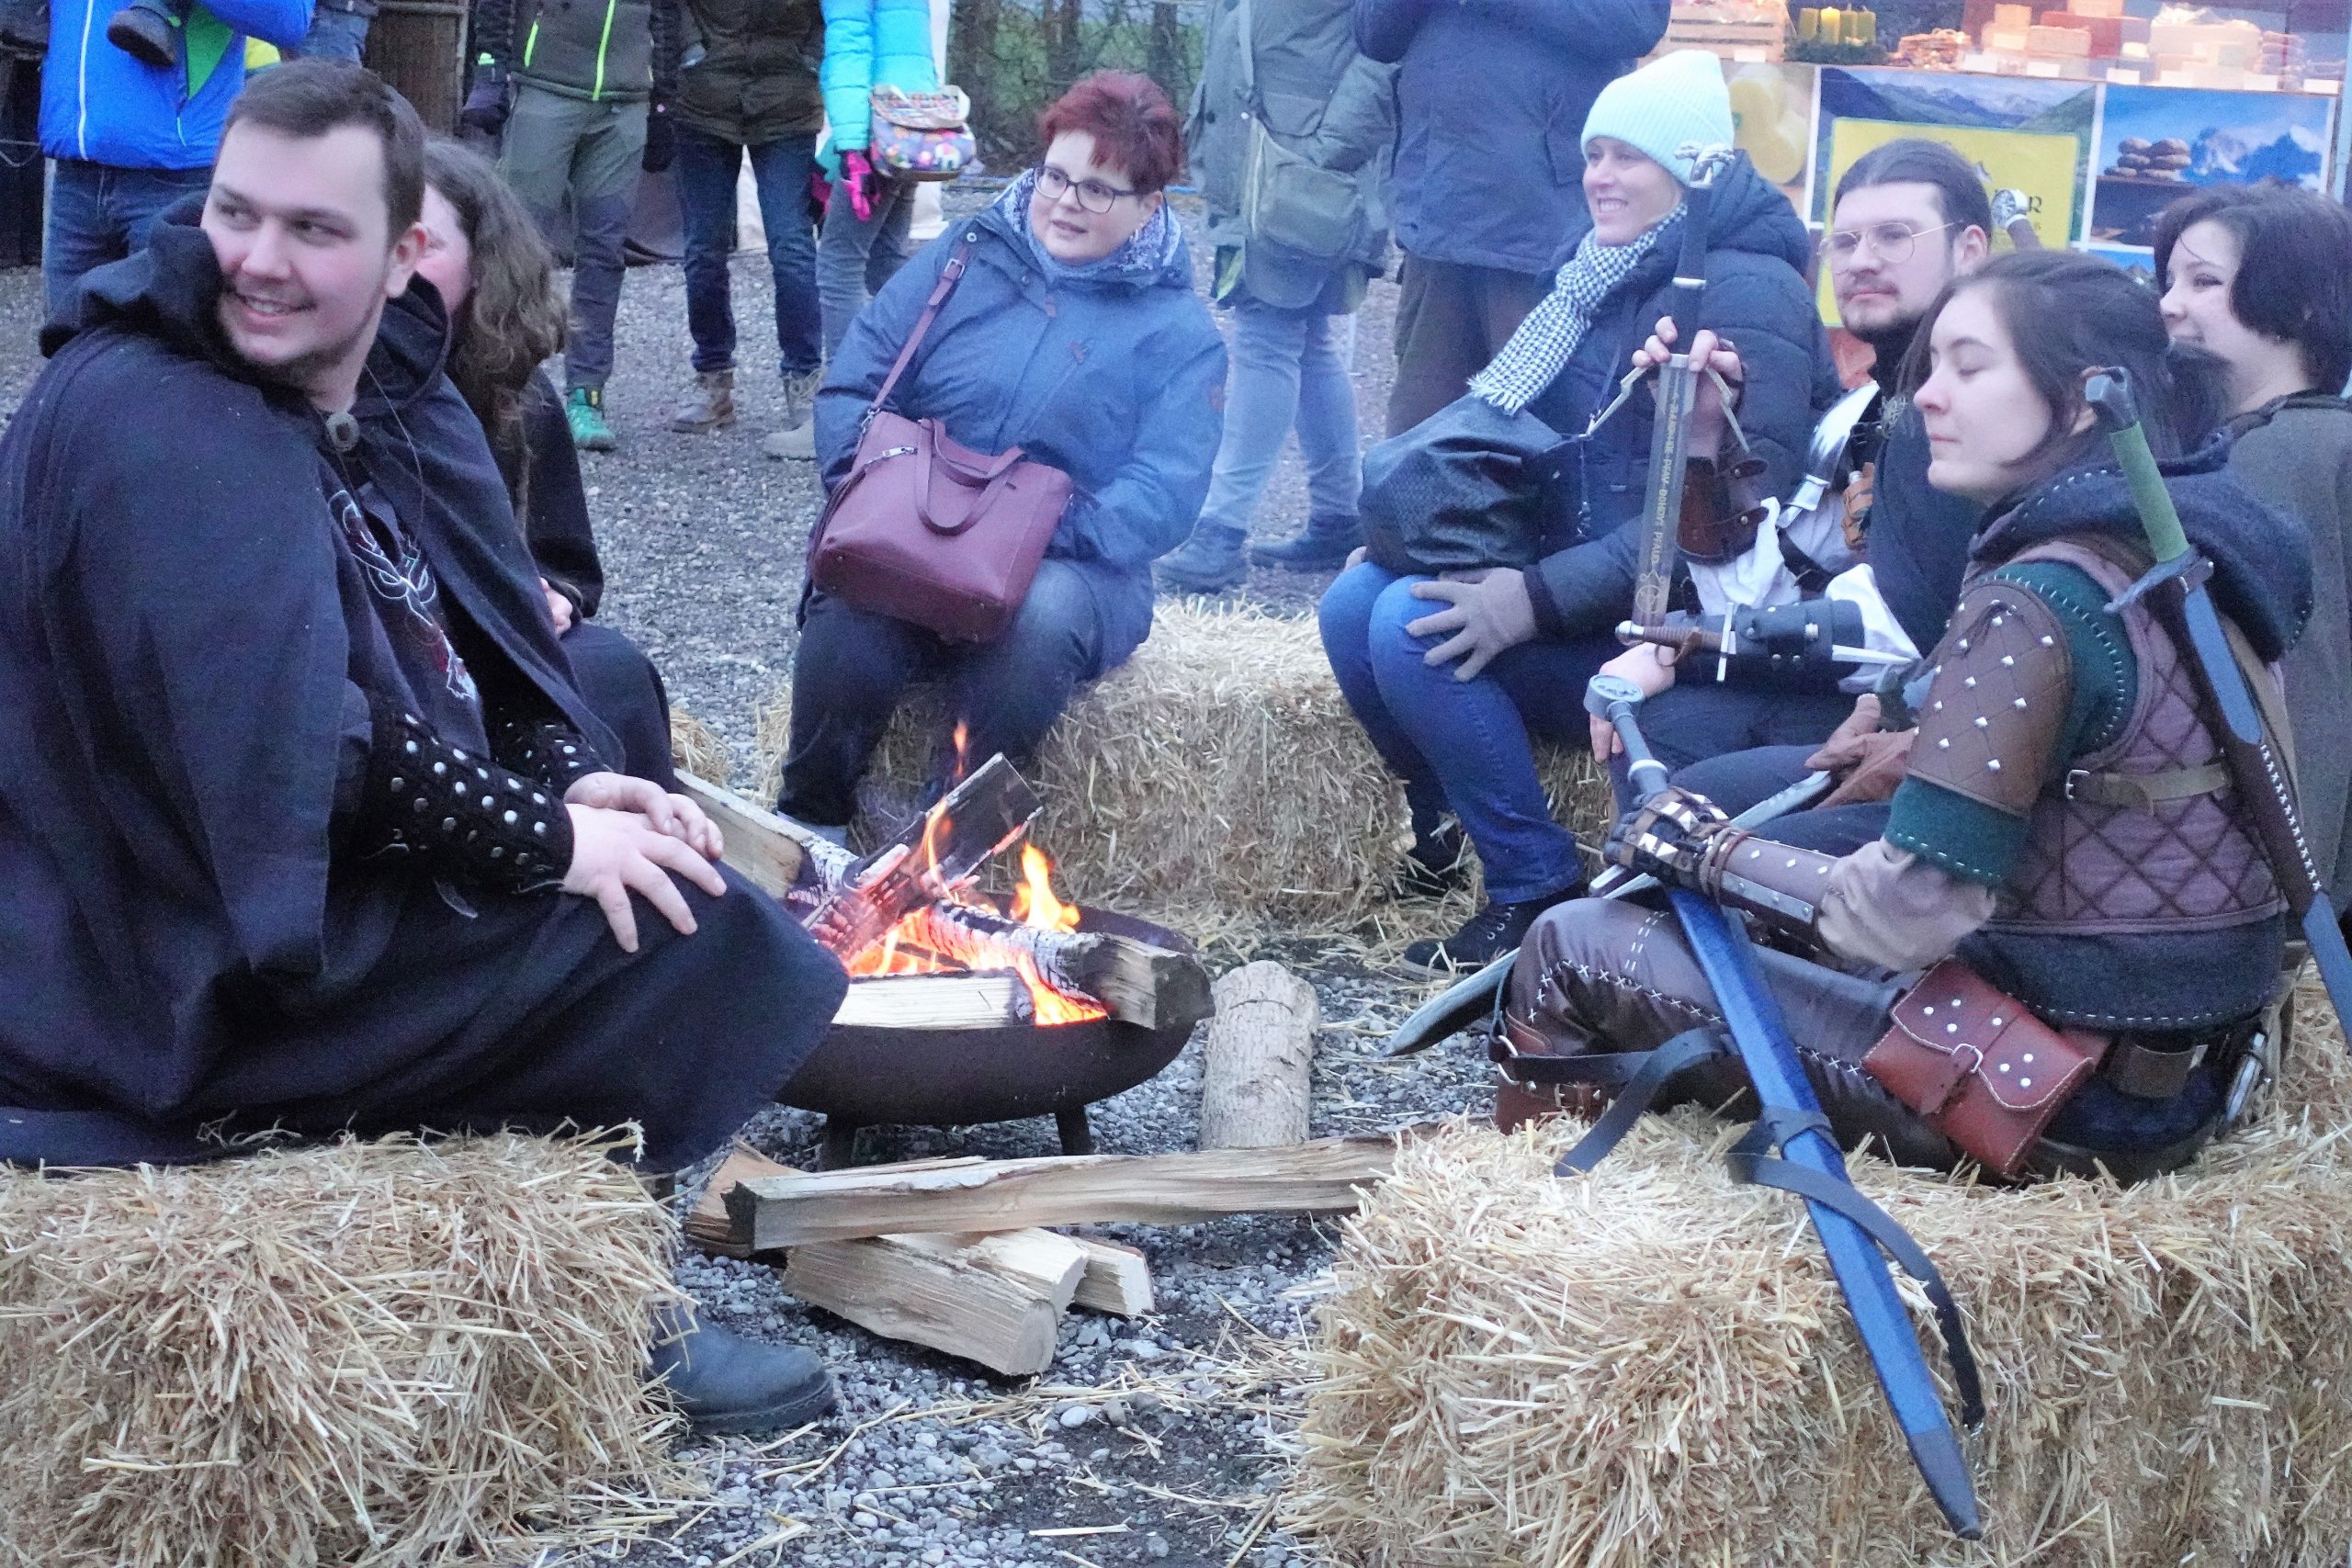 Besucher, teils mittelalterlich gekleidet, sitzen auf Heuballen um ein Lagerfeuer